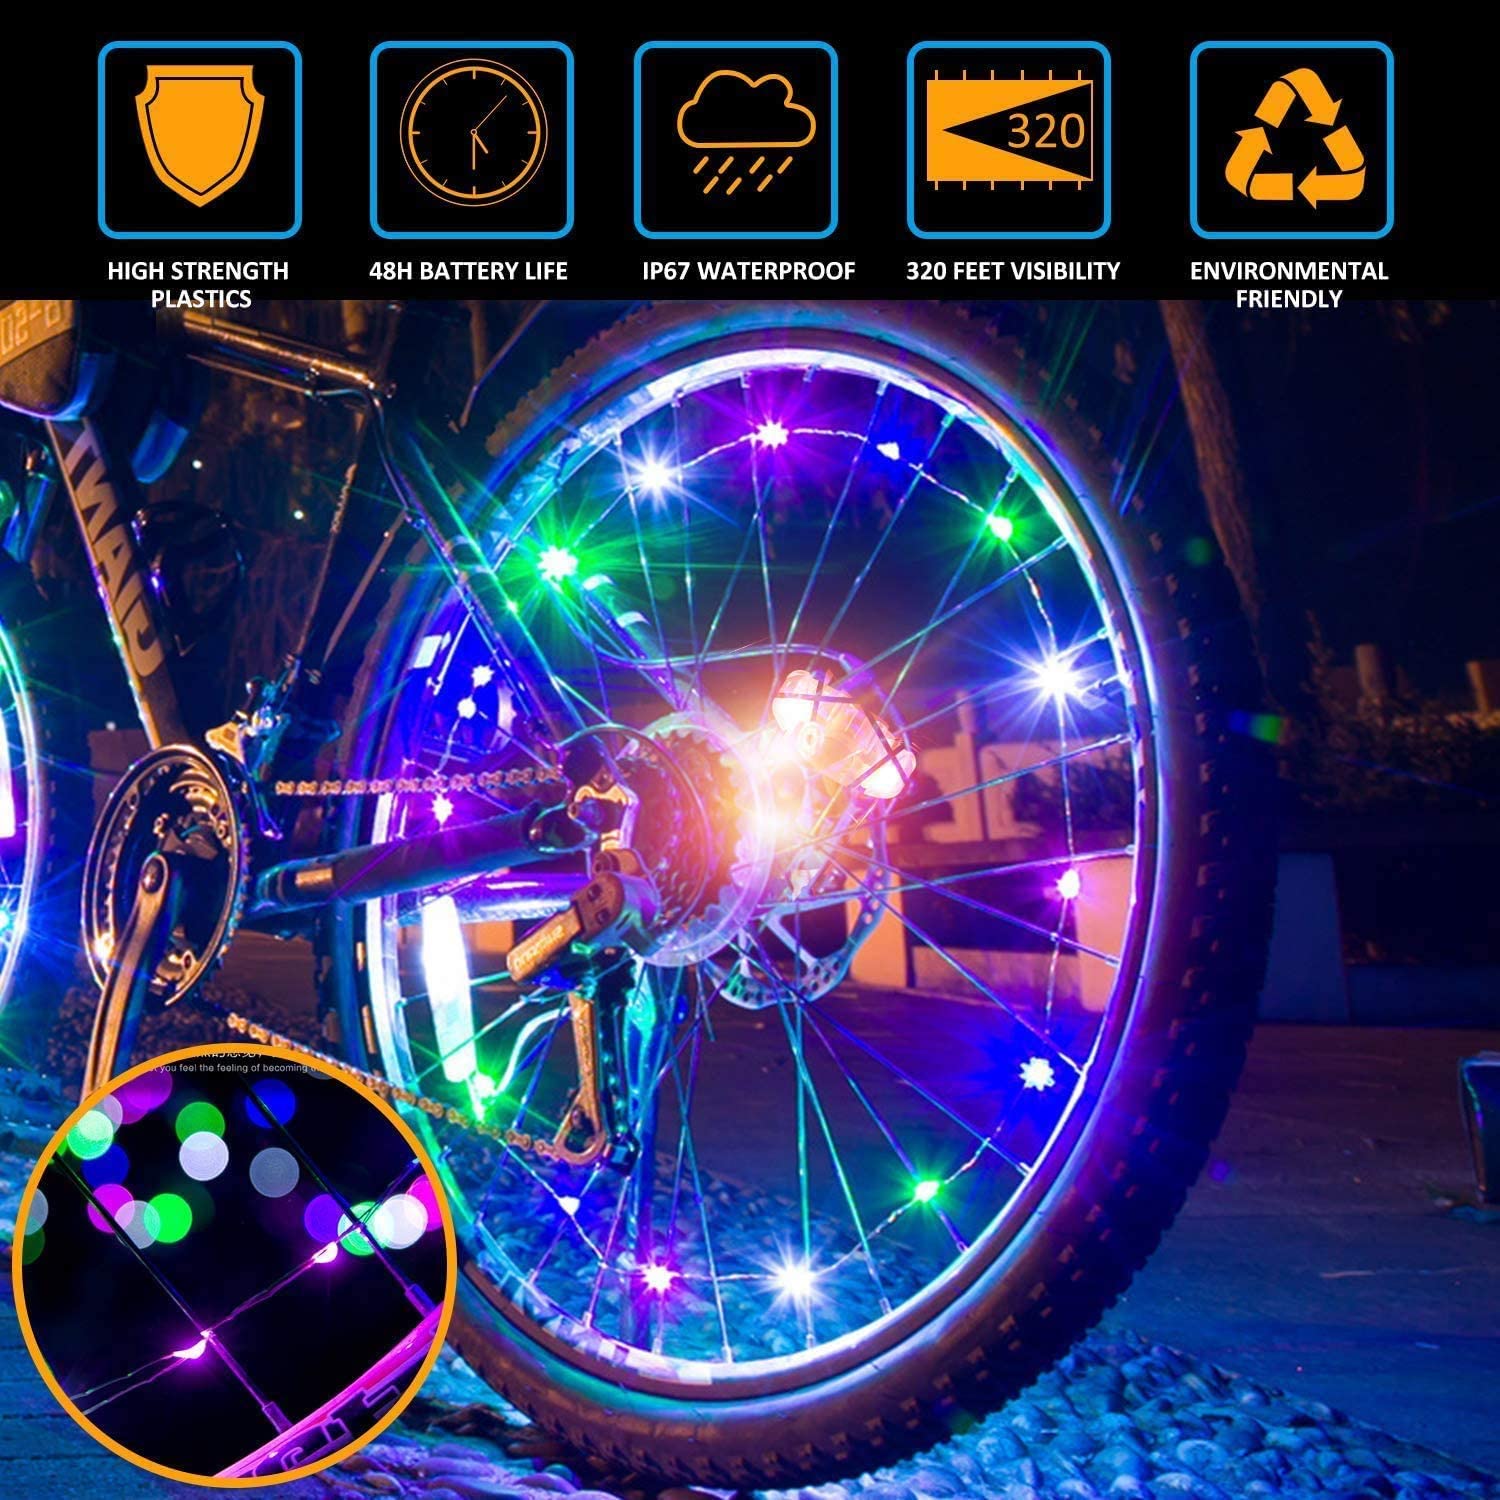 LED Bike Wheel Lights 2-Tire Pack